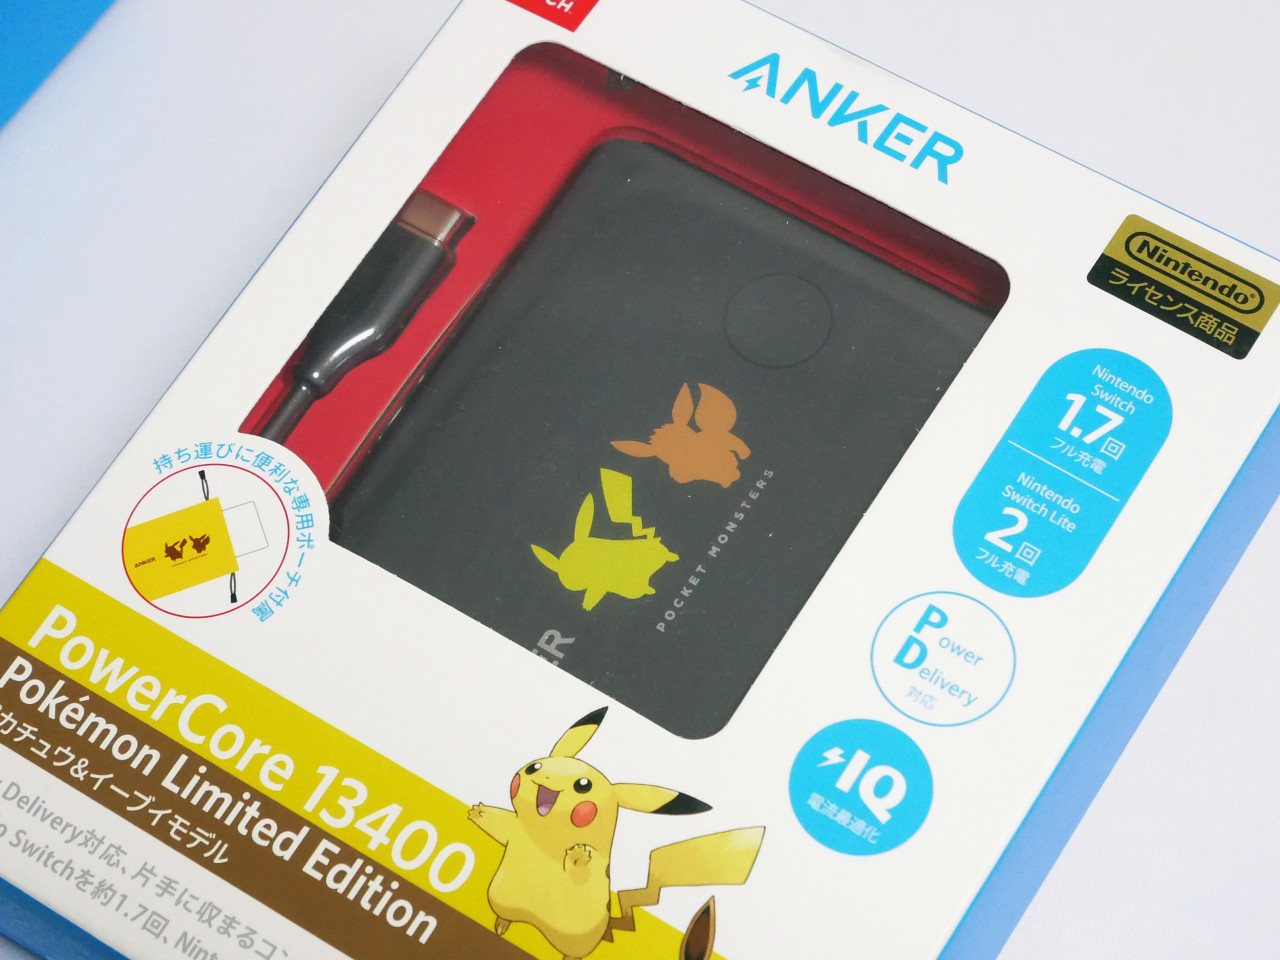 大人気 ポケモン好き必携の Anker Powercore Pokemon Limited Edition レビュー ニンテンドースイッチもスマホも急速充電できるusb Pd対応モバイルバッテリー Buzzap